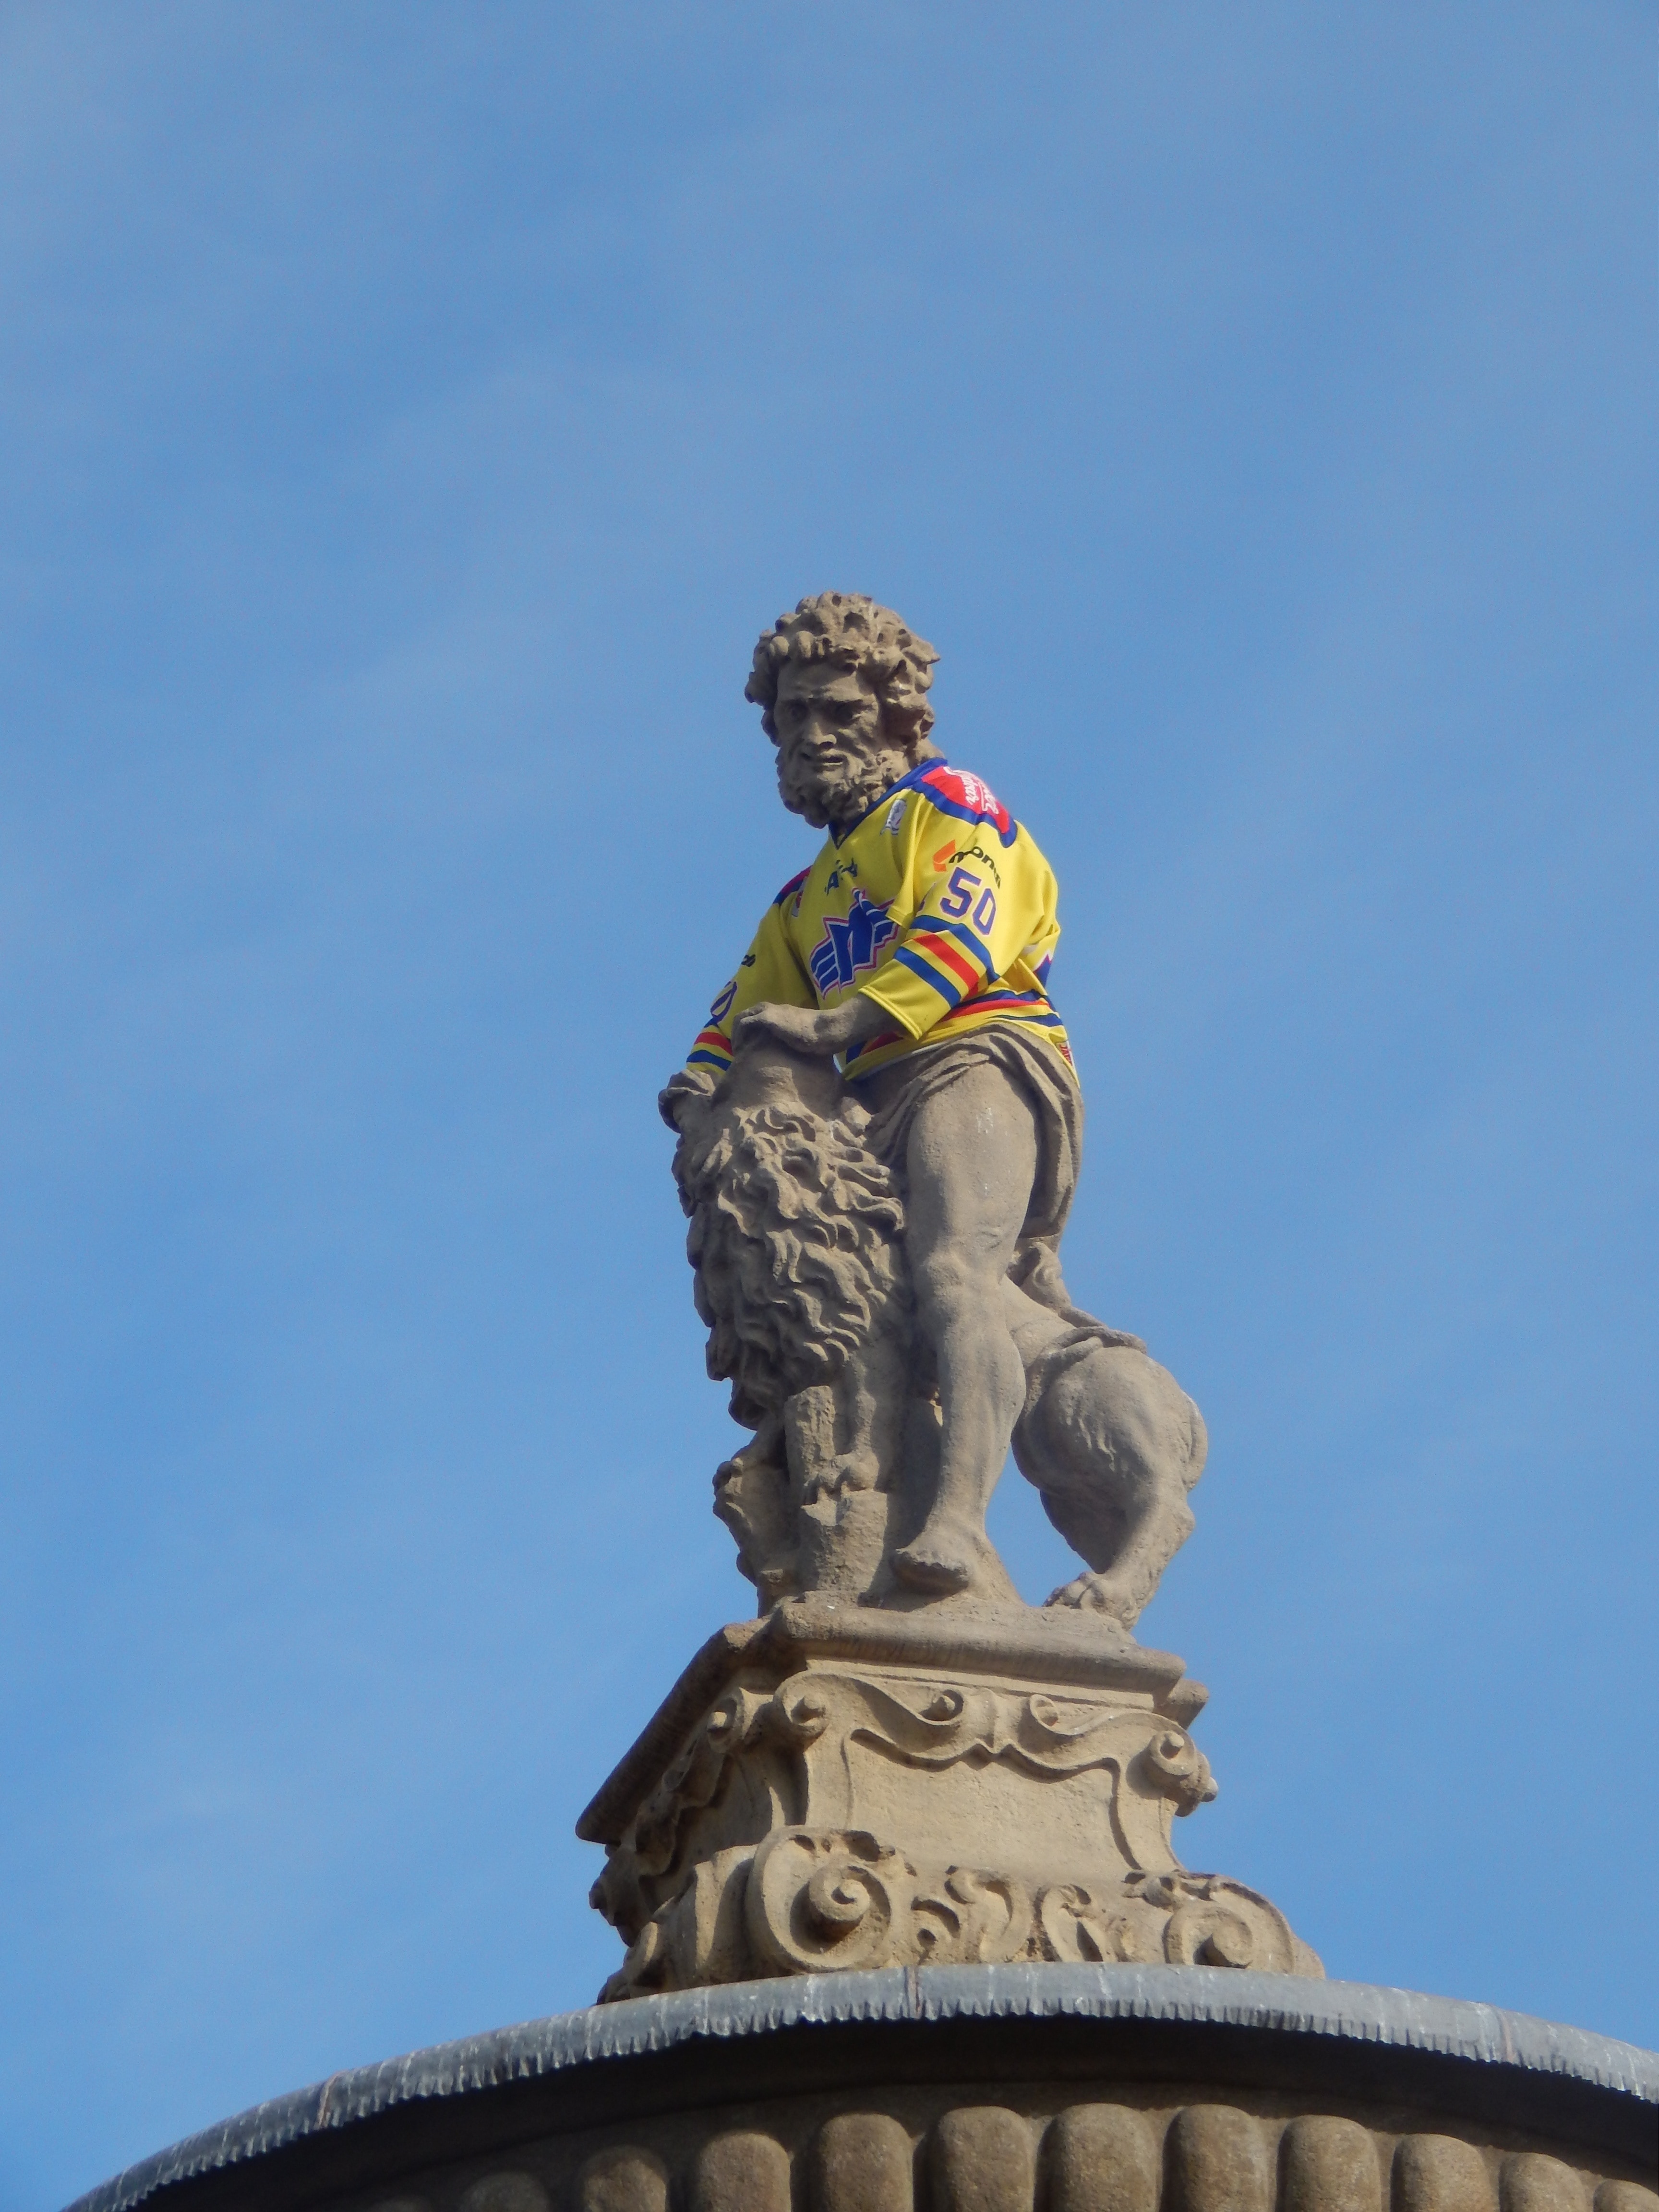 man riding lion statue during daytime